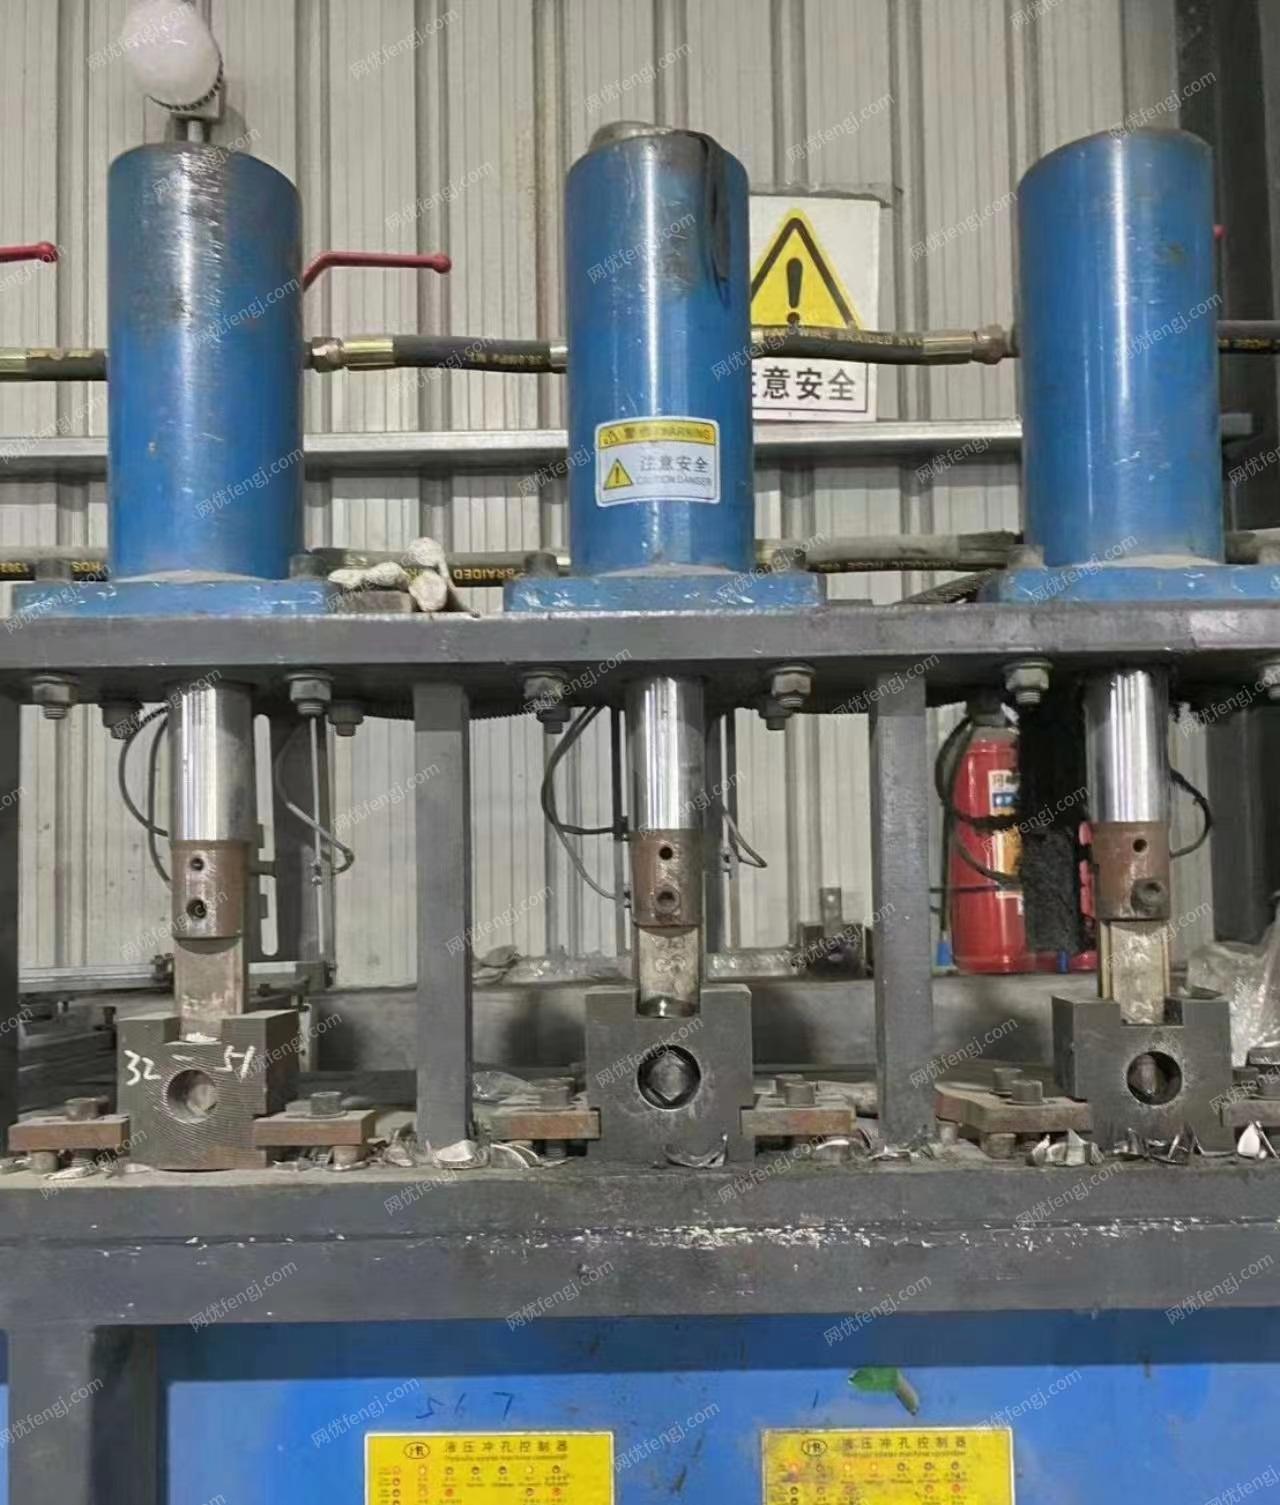 广东惠州工厂搬迁急出七工位液压坡口机